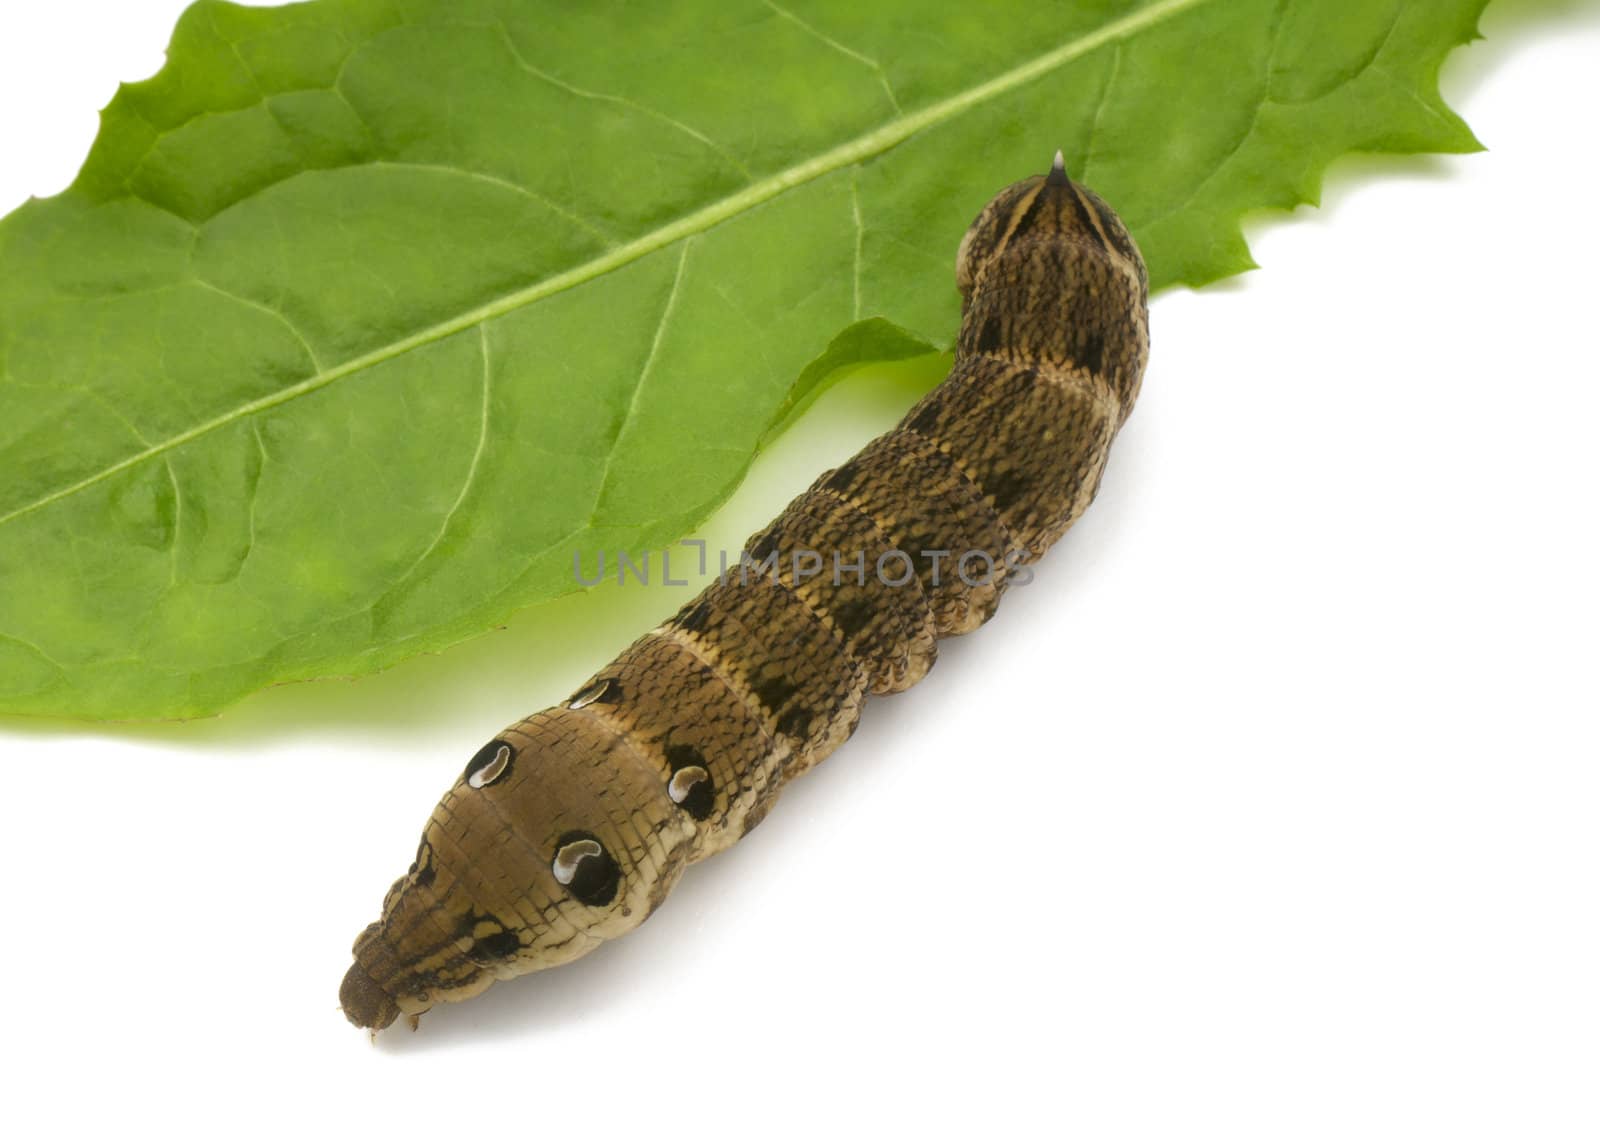 Elephant hawkeye moth caterpillar by Kamensky